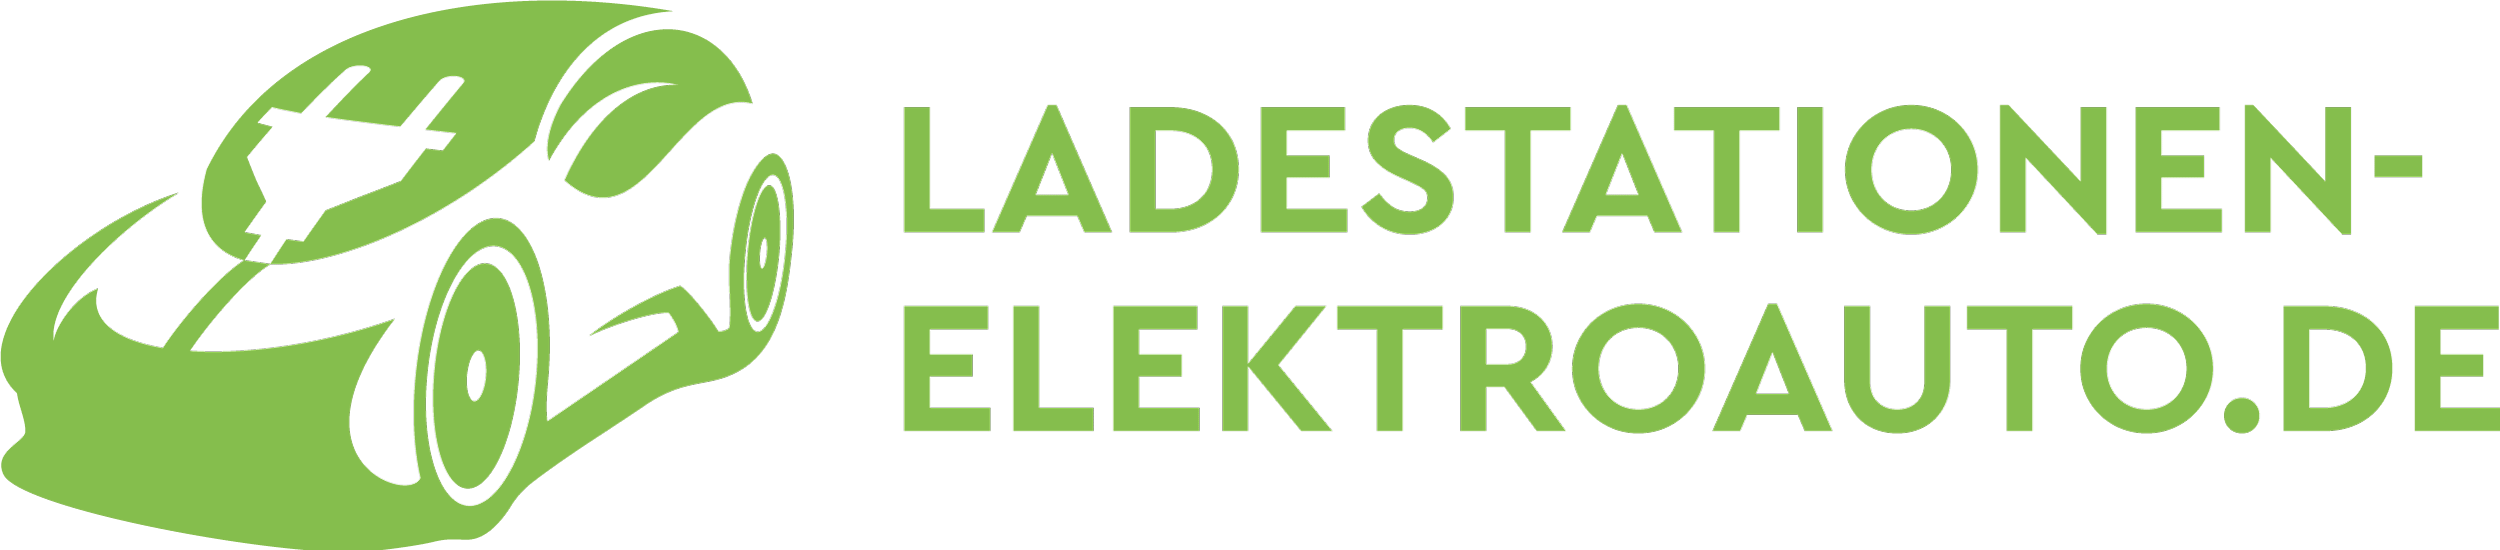 ladestationen-elektroauto-logo